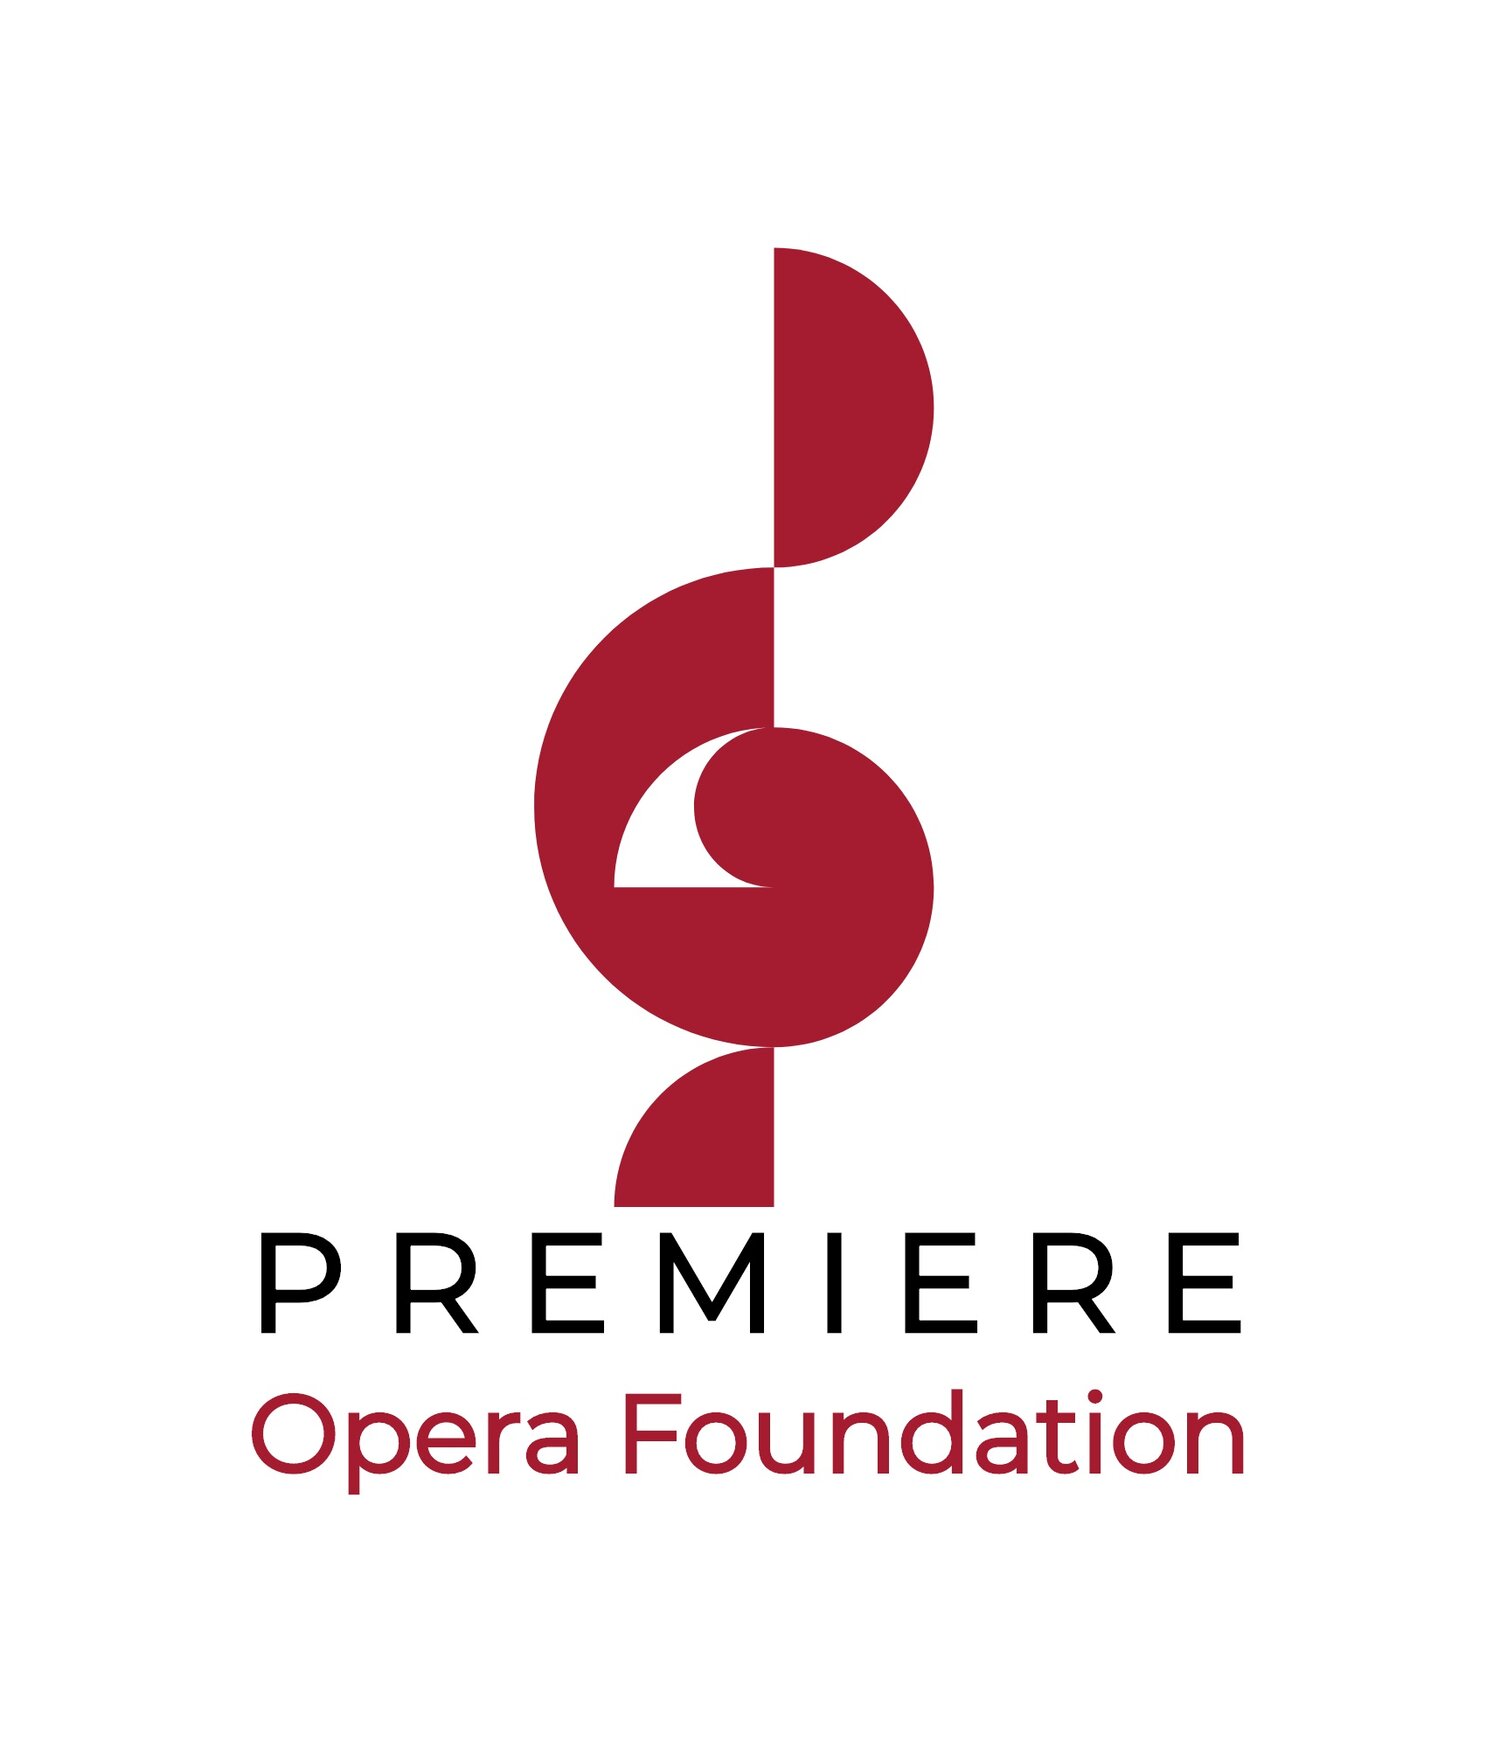 Premiere Opera Foundation